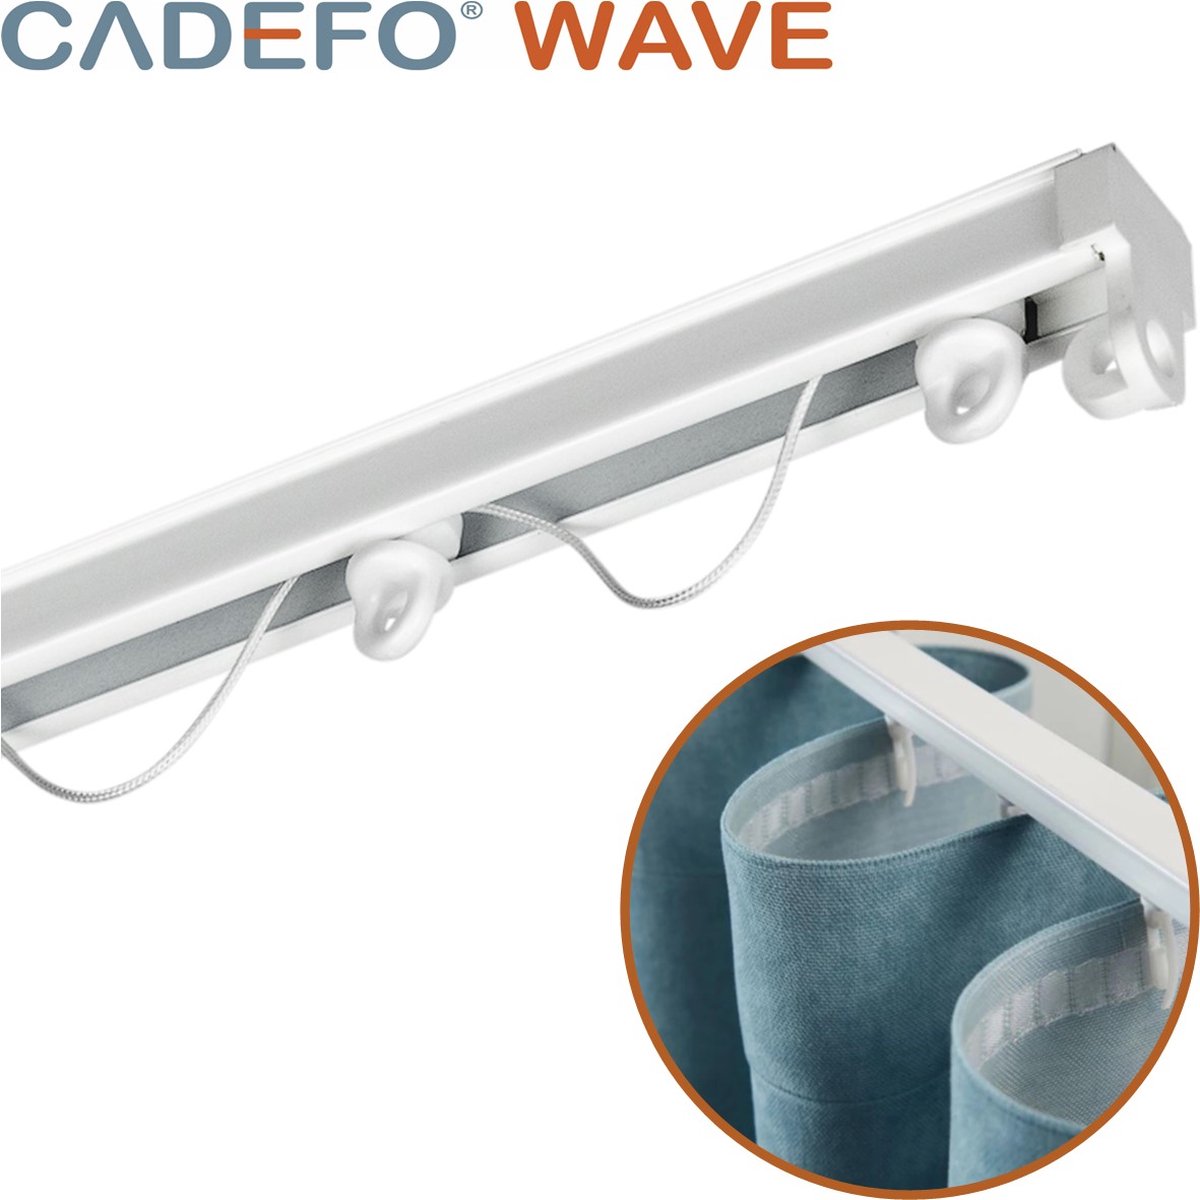 CADEFO WAVE (301 - 350 cm) Gordijnrails - Compleet op maat! - UIT 1 STUK - Leverbaar tot 6 meter - Plafondbevestiging - Lengte 308 cm